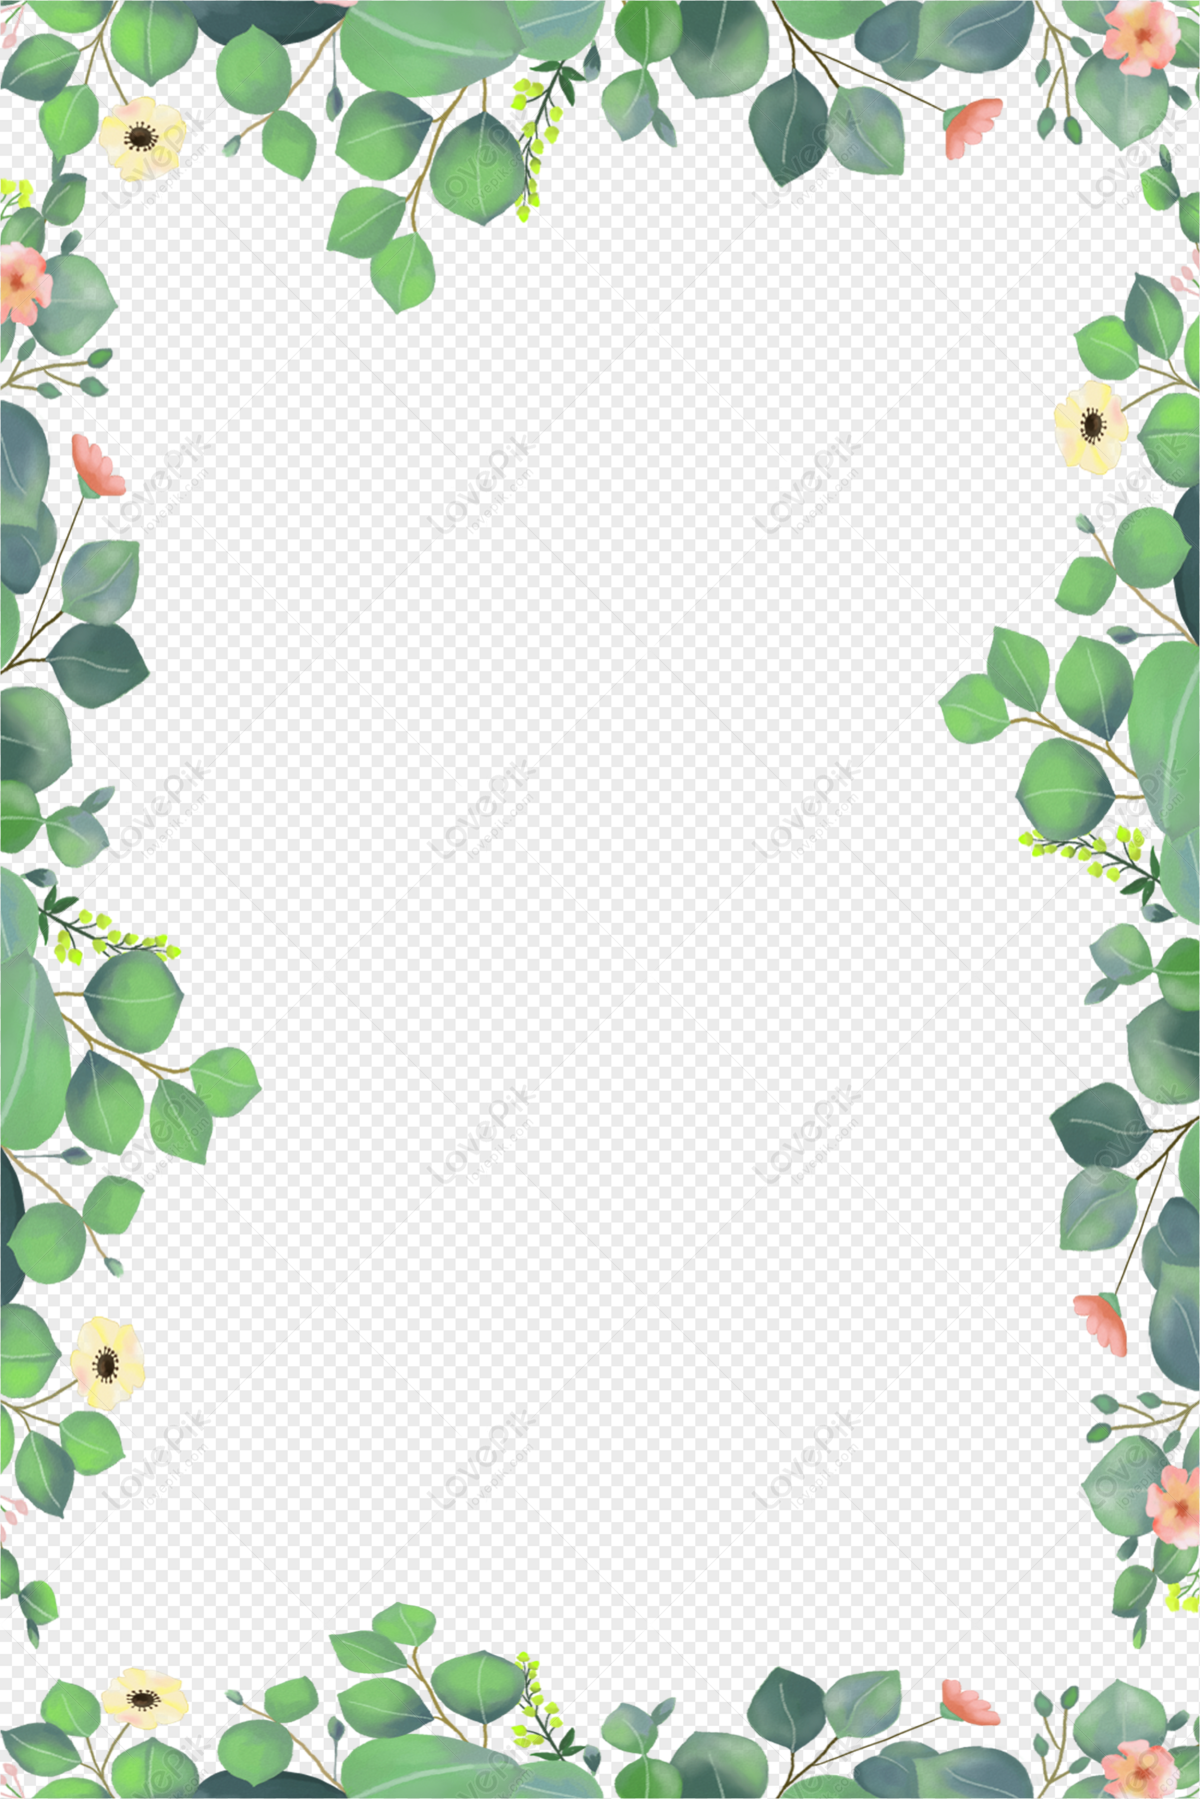 Leaves border, spring, spring border, leaves png hd transparent image